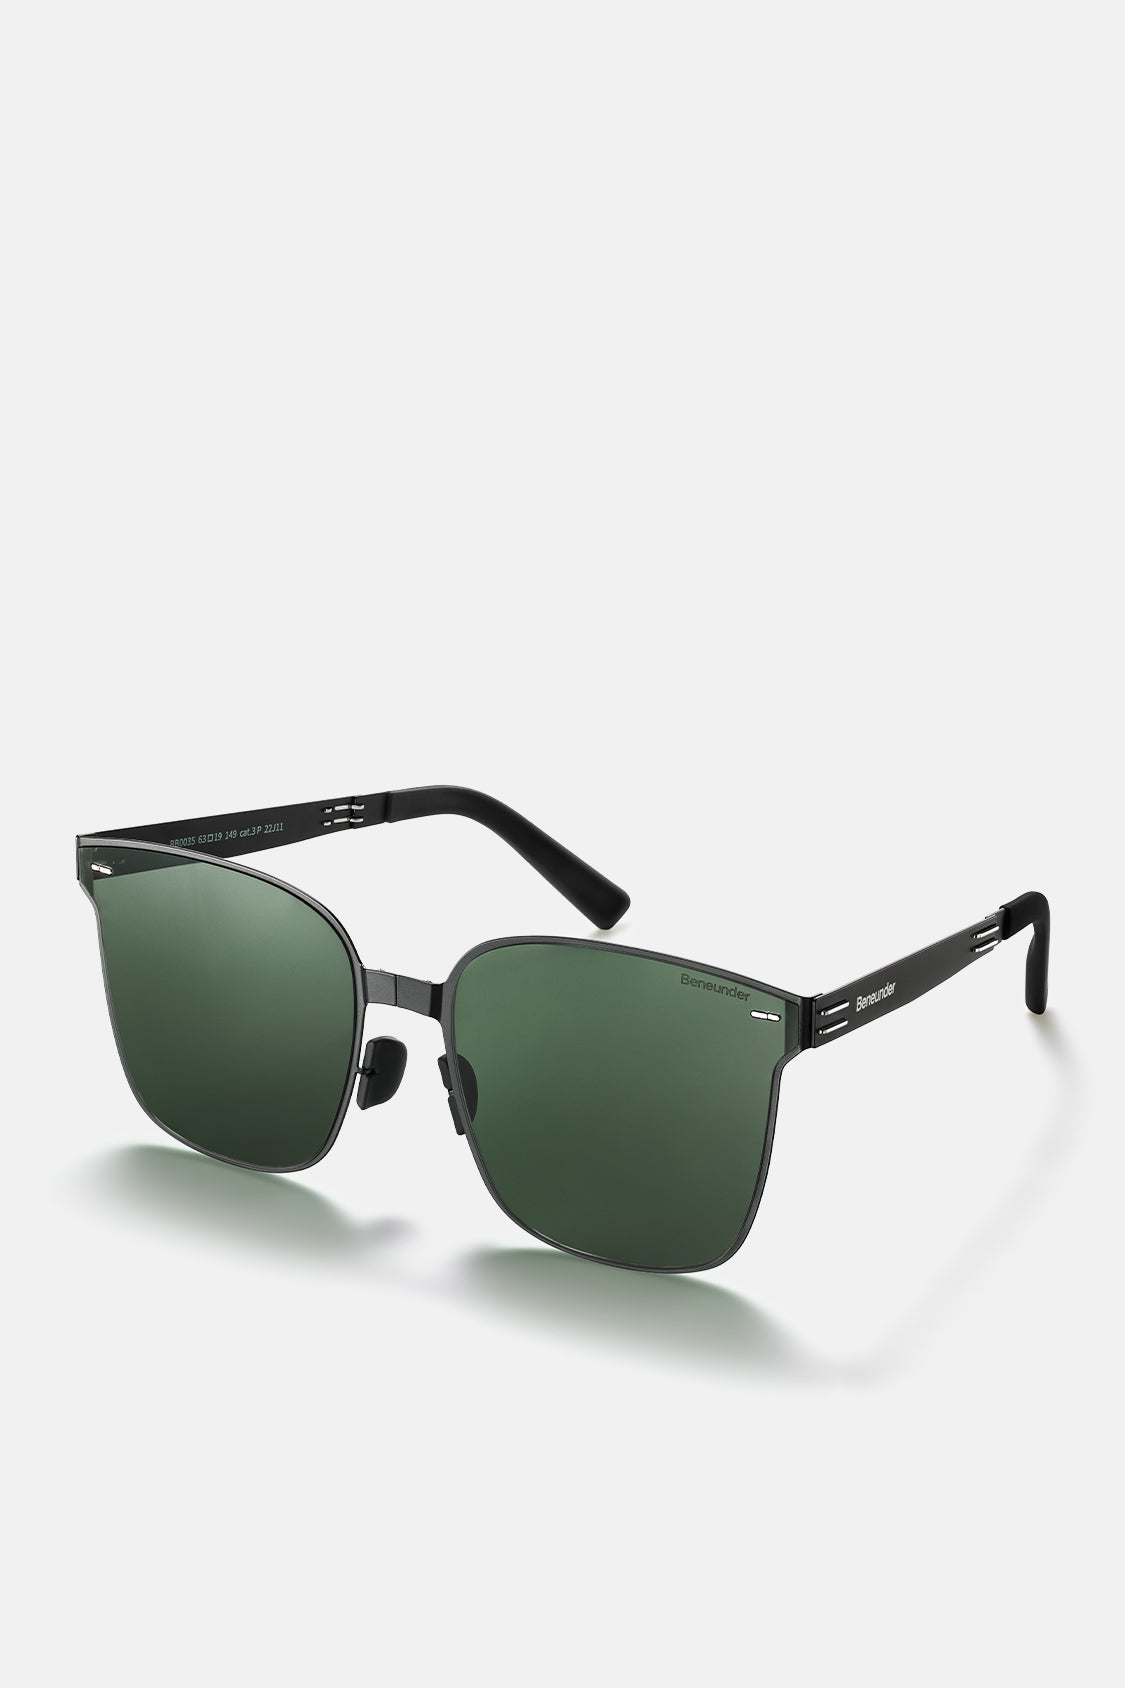 beneunder men's slimline polarized folding sunglasses shades #color_forest summit